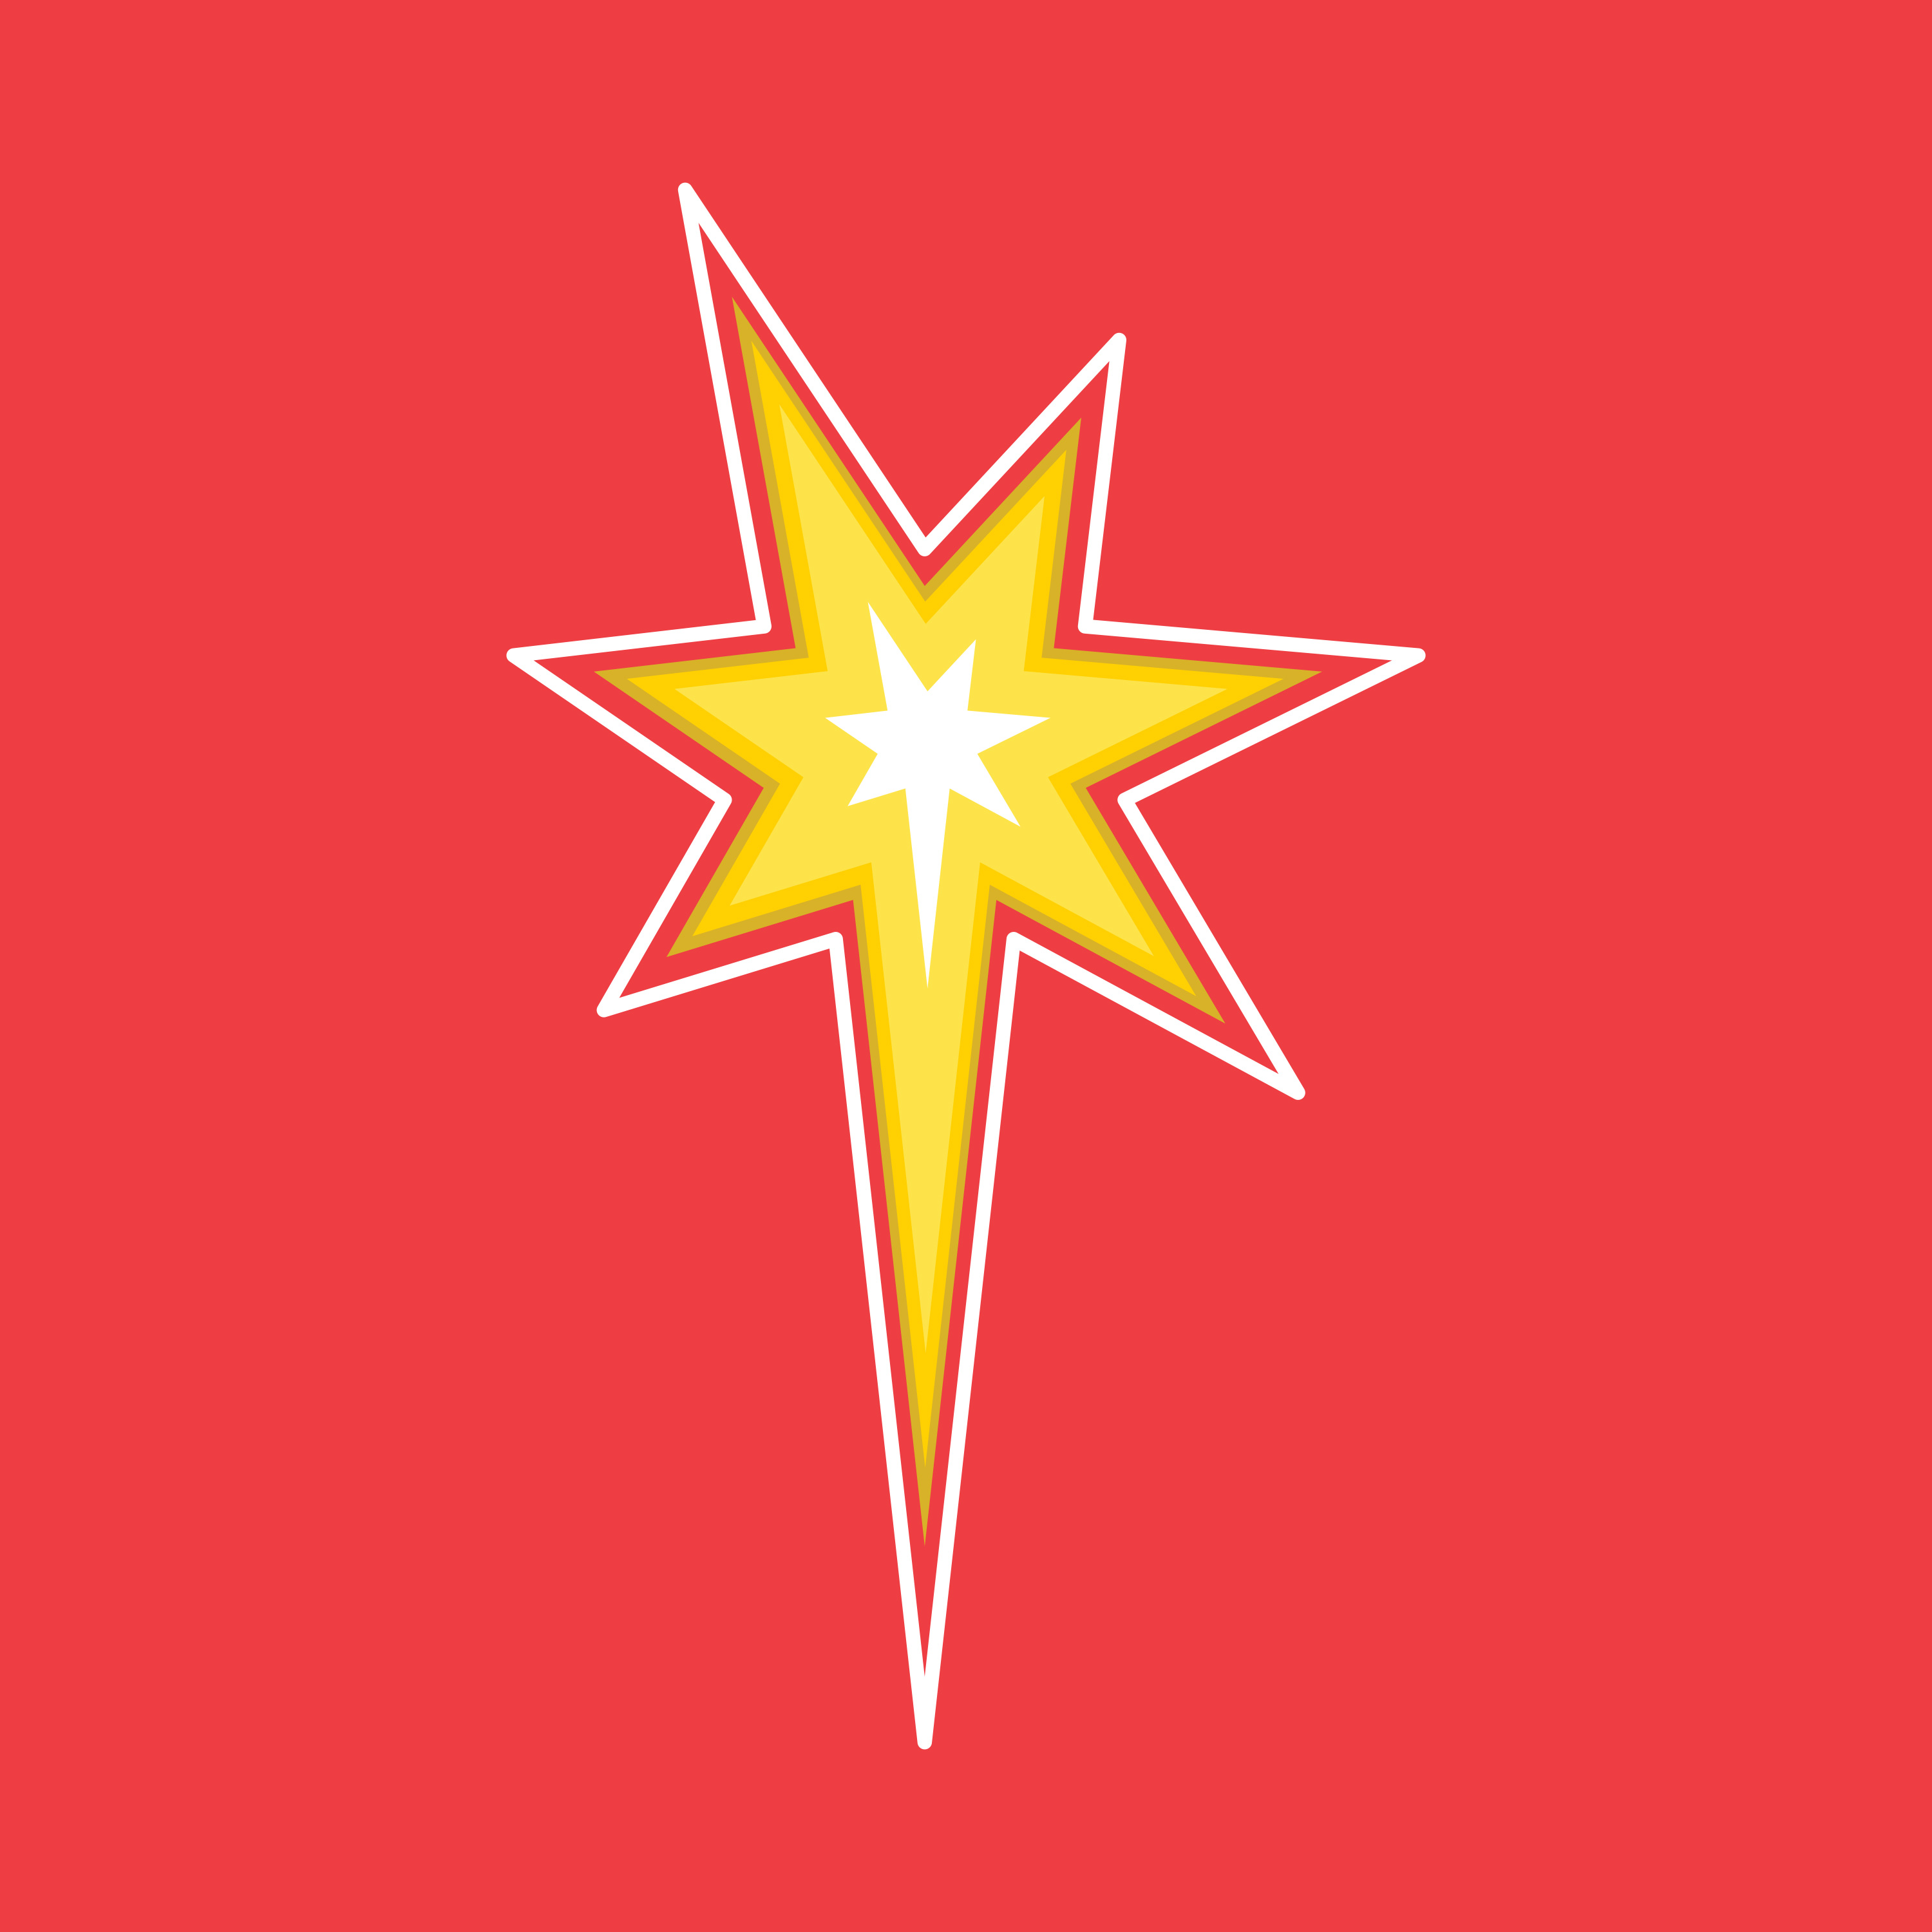 Mesa County Libraries Comic Con star logo